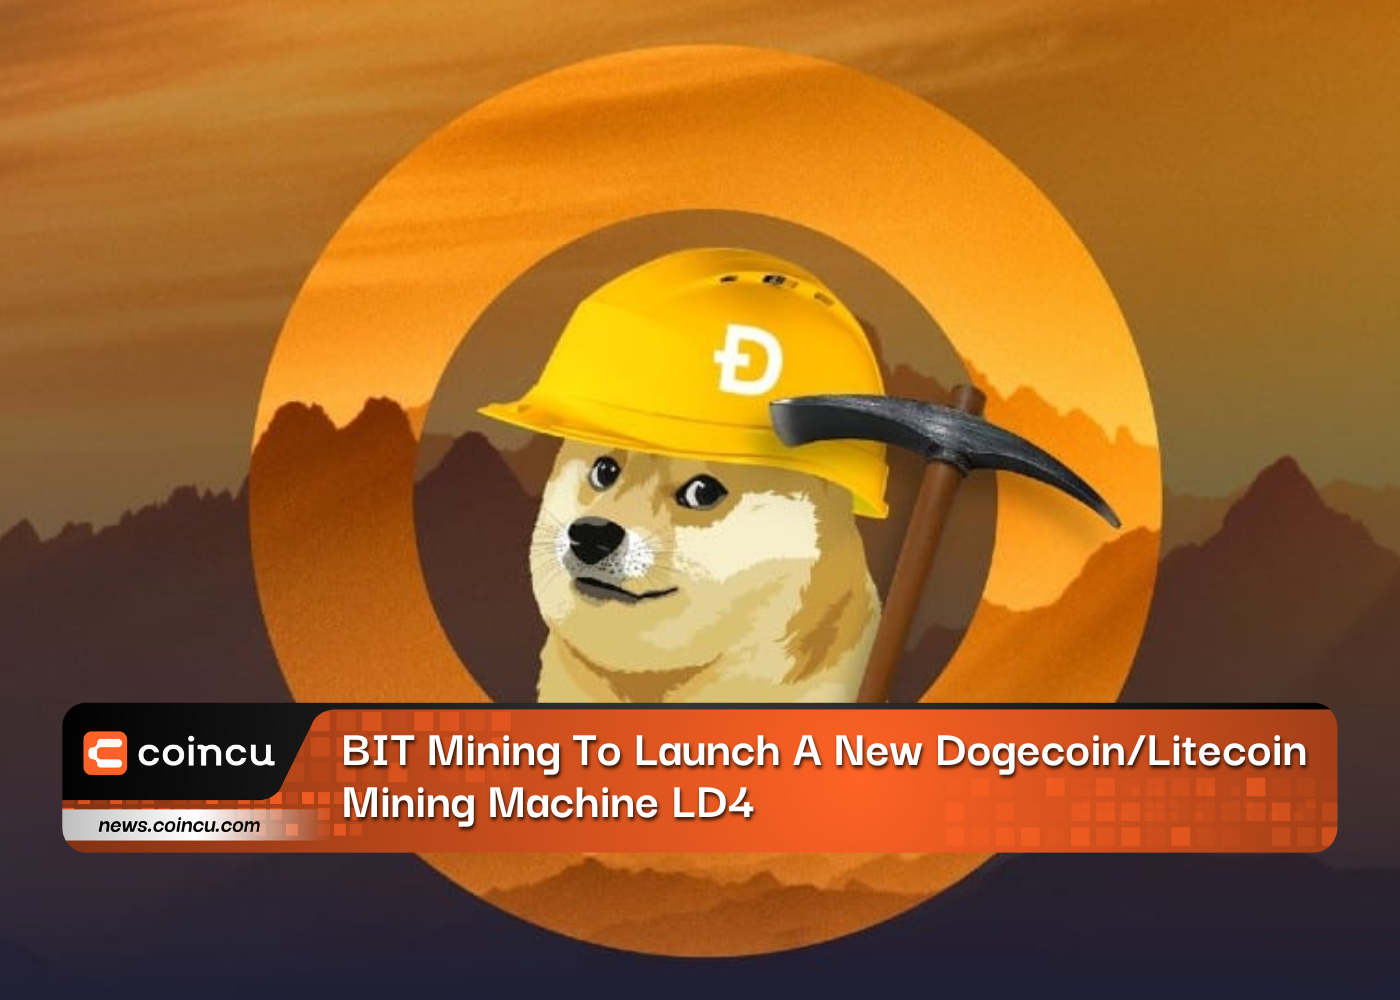 Khai thác BIT để ra mắt máy khai thác Dogecoin/Litecoin mới LD4